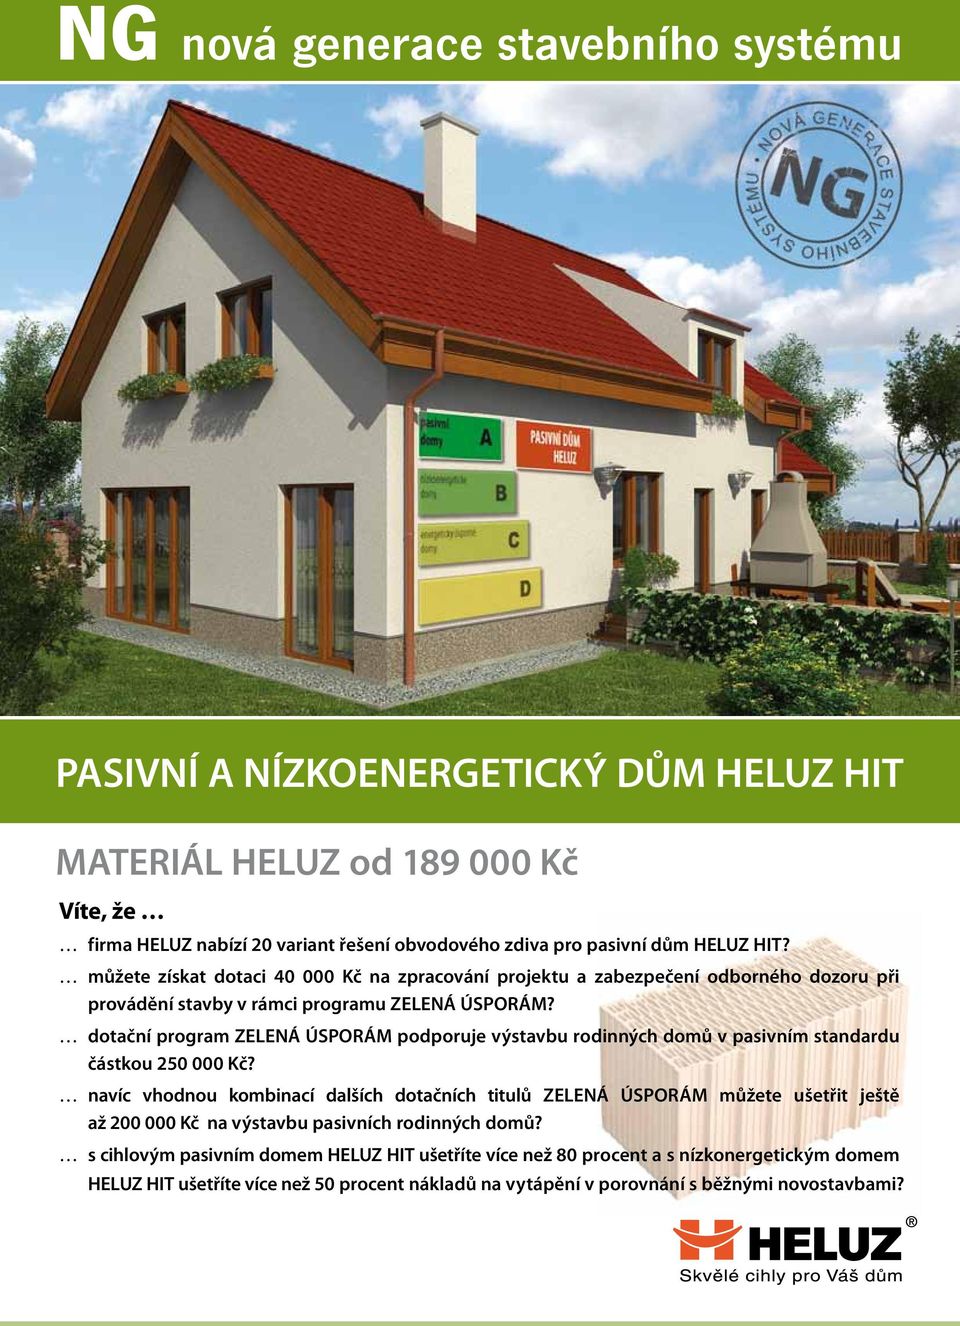 dotační program ZELENÁ ÚSPORÁM podporuje výstavbu rodinných domů v pasivním standardu částkou 250 000 Kč?